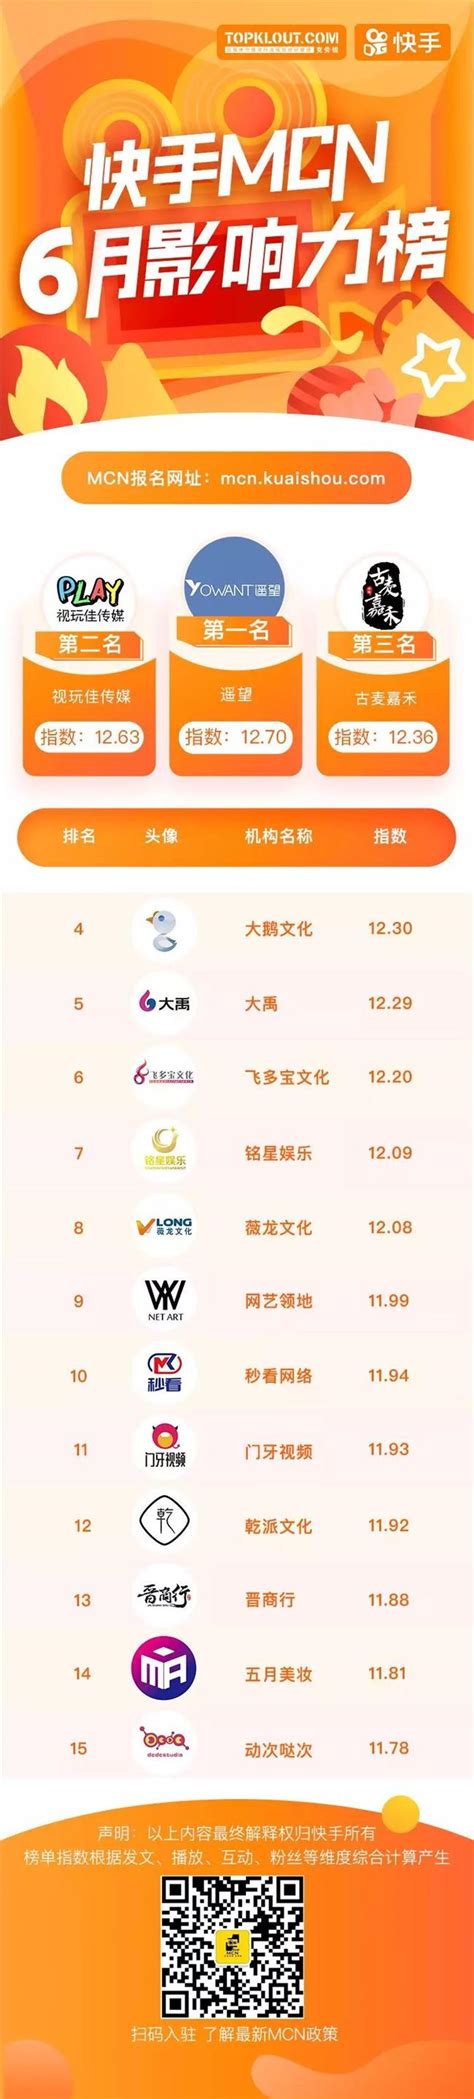 2017年贷款余额TOP100平台榜单出炉（附表格）-闽南网